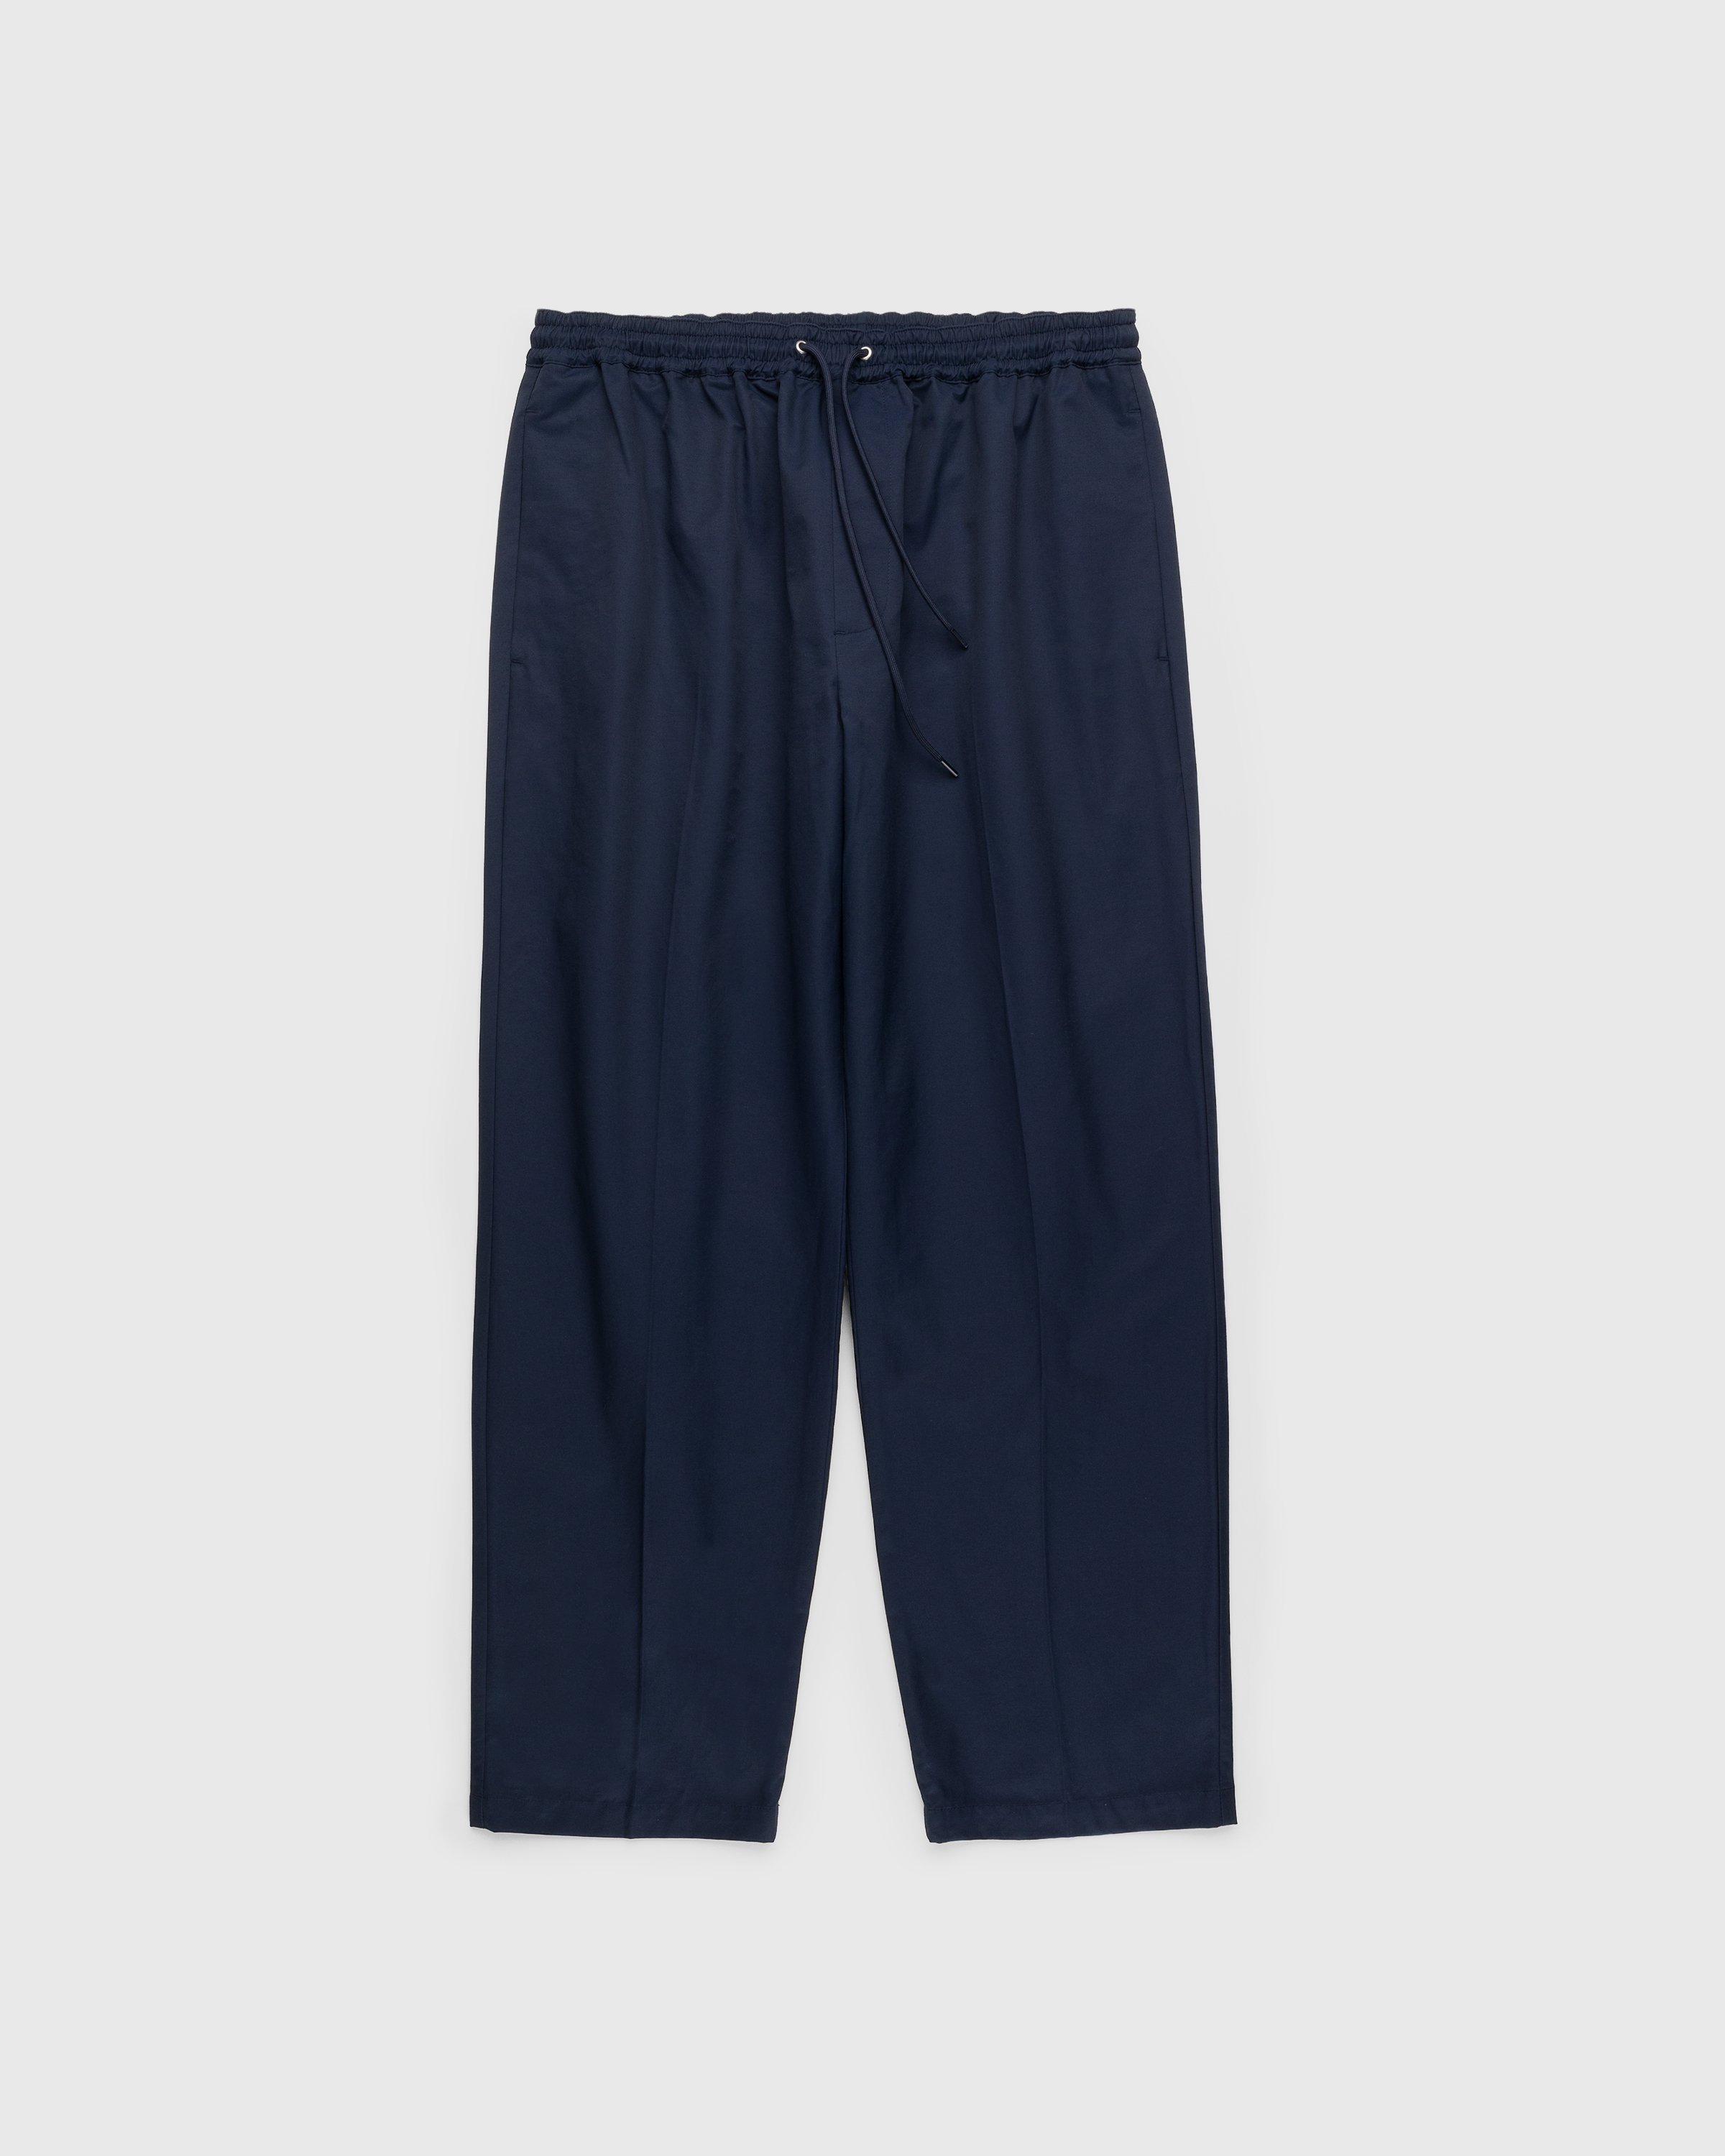 Highsnobiety - Cotton Nylon Elastic Pants Navy - Clothing - Blue - Image 1